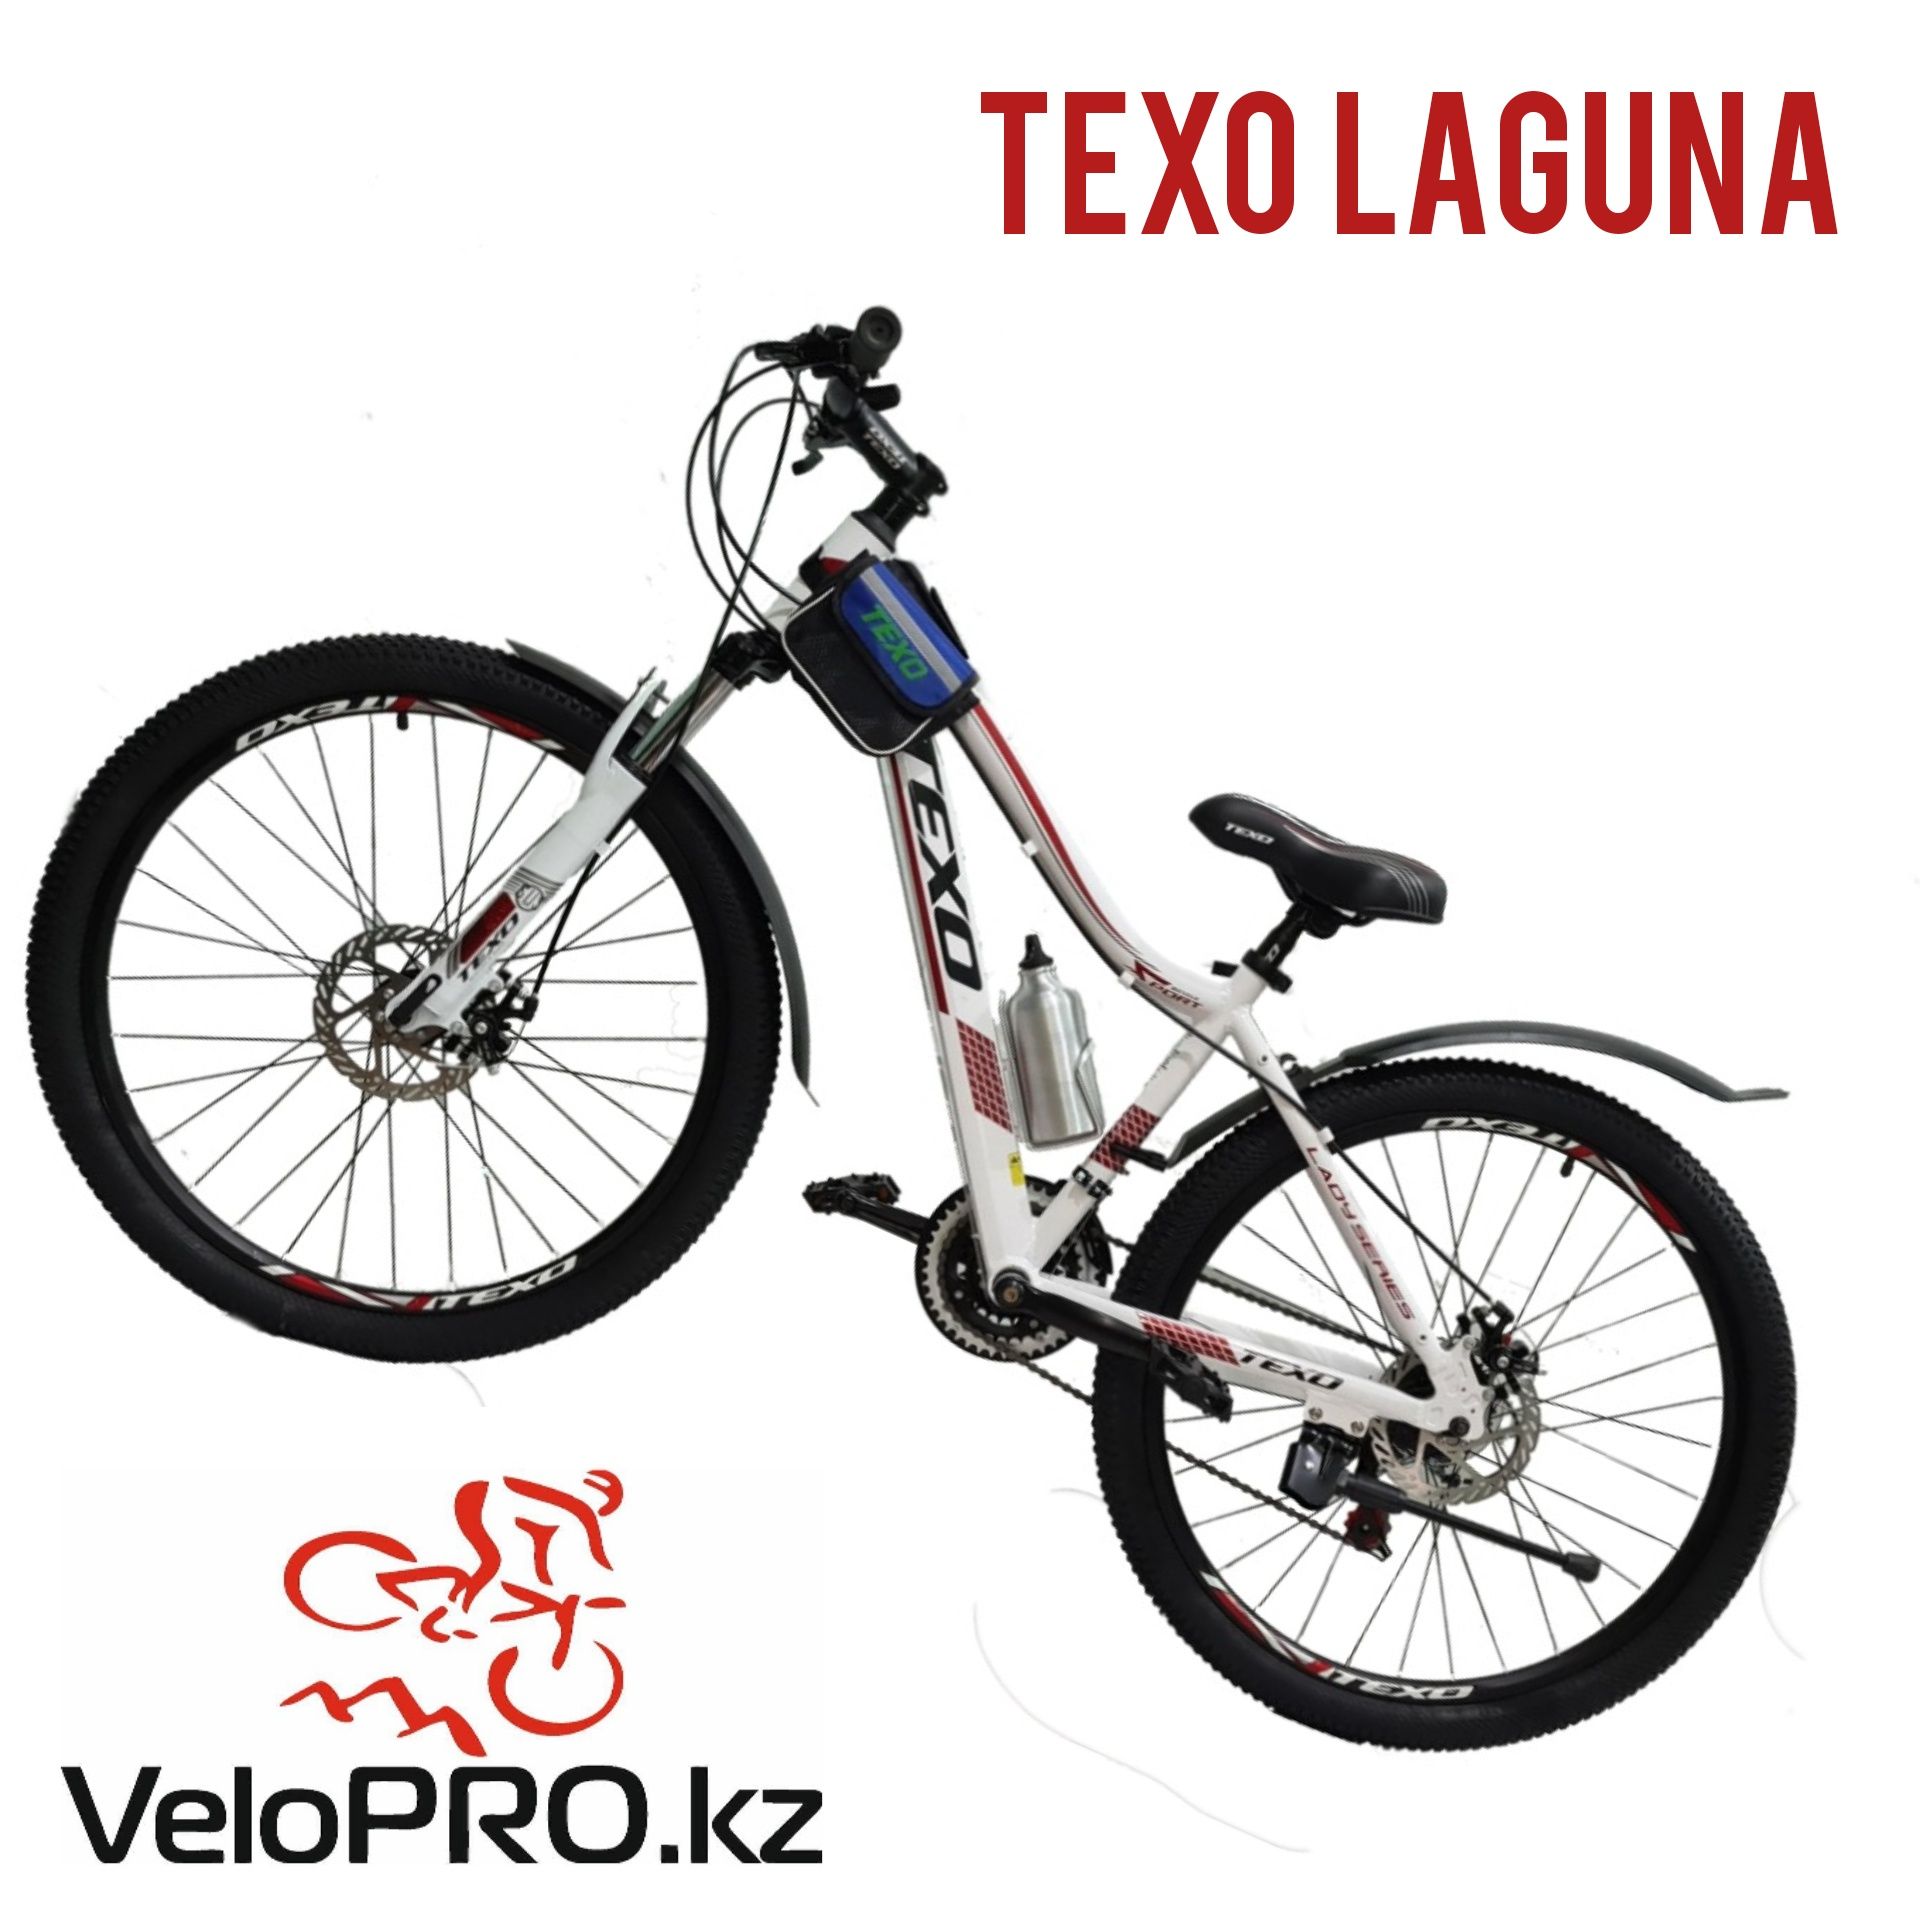 Велосипед Texo Laguna Arena Garrick Expert Pro. Гарантия 3 м. Рассрочк